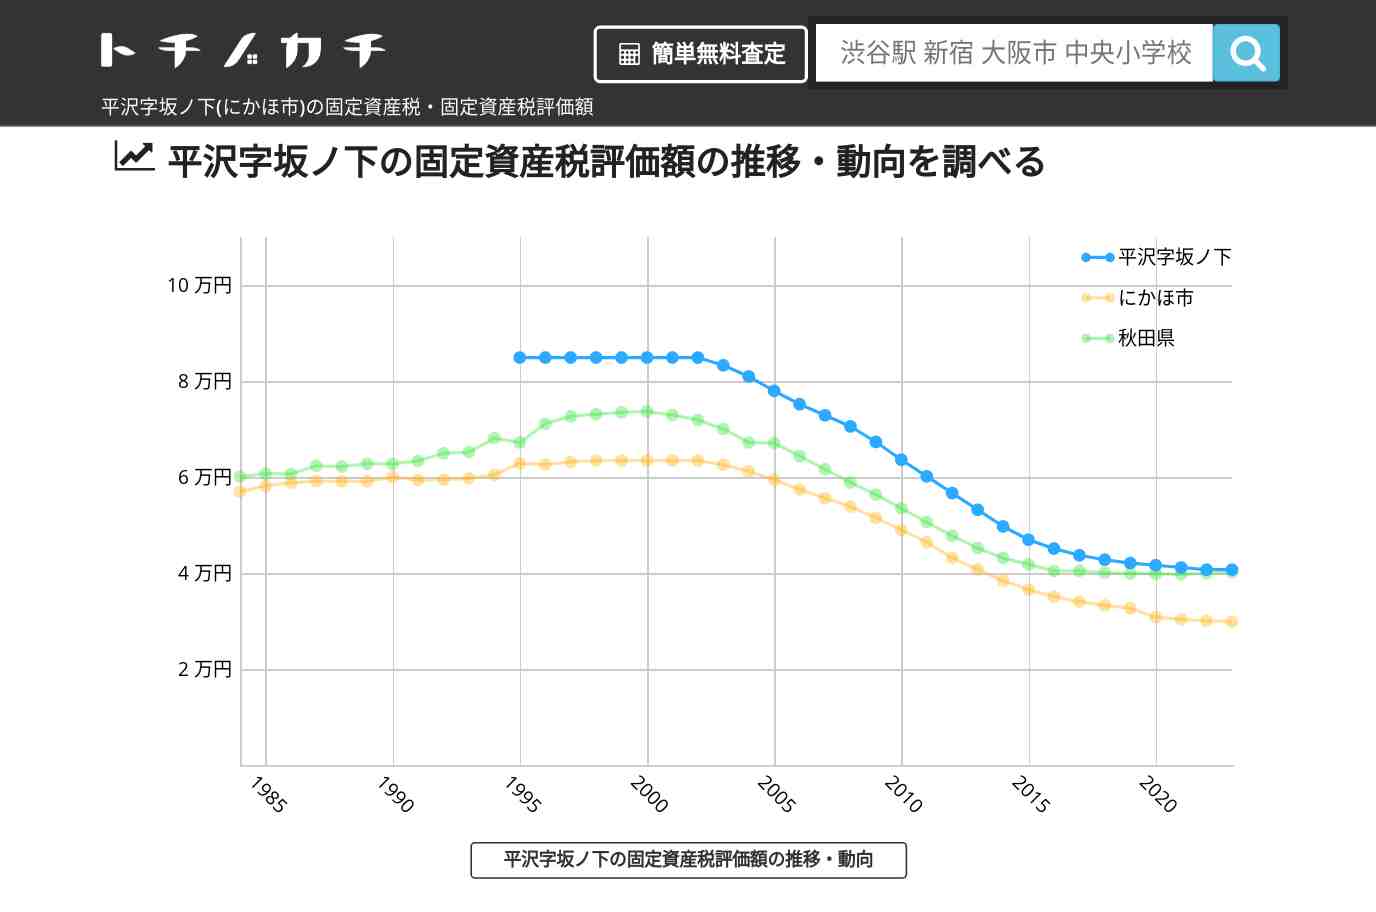 平沢字坂ノ下(にかほ市)の固定資産税・固定資産税評価額 | トチノカチ